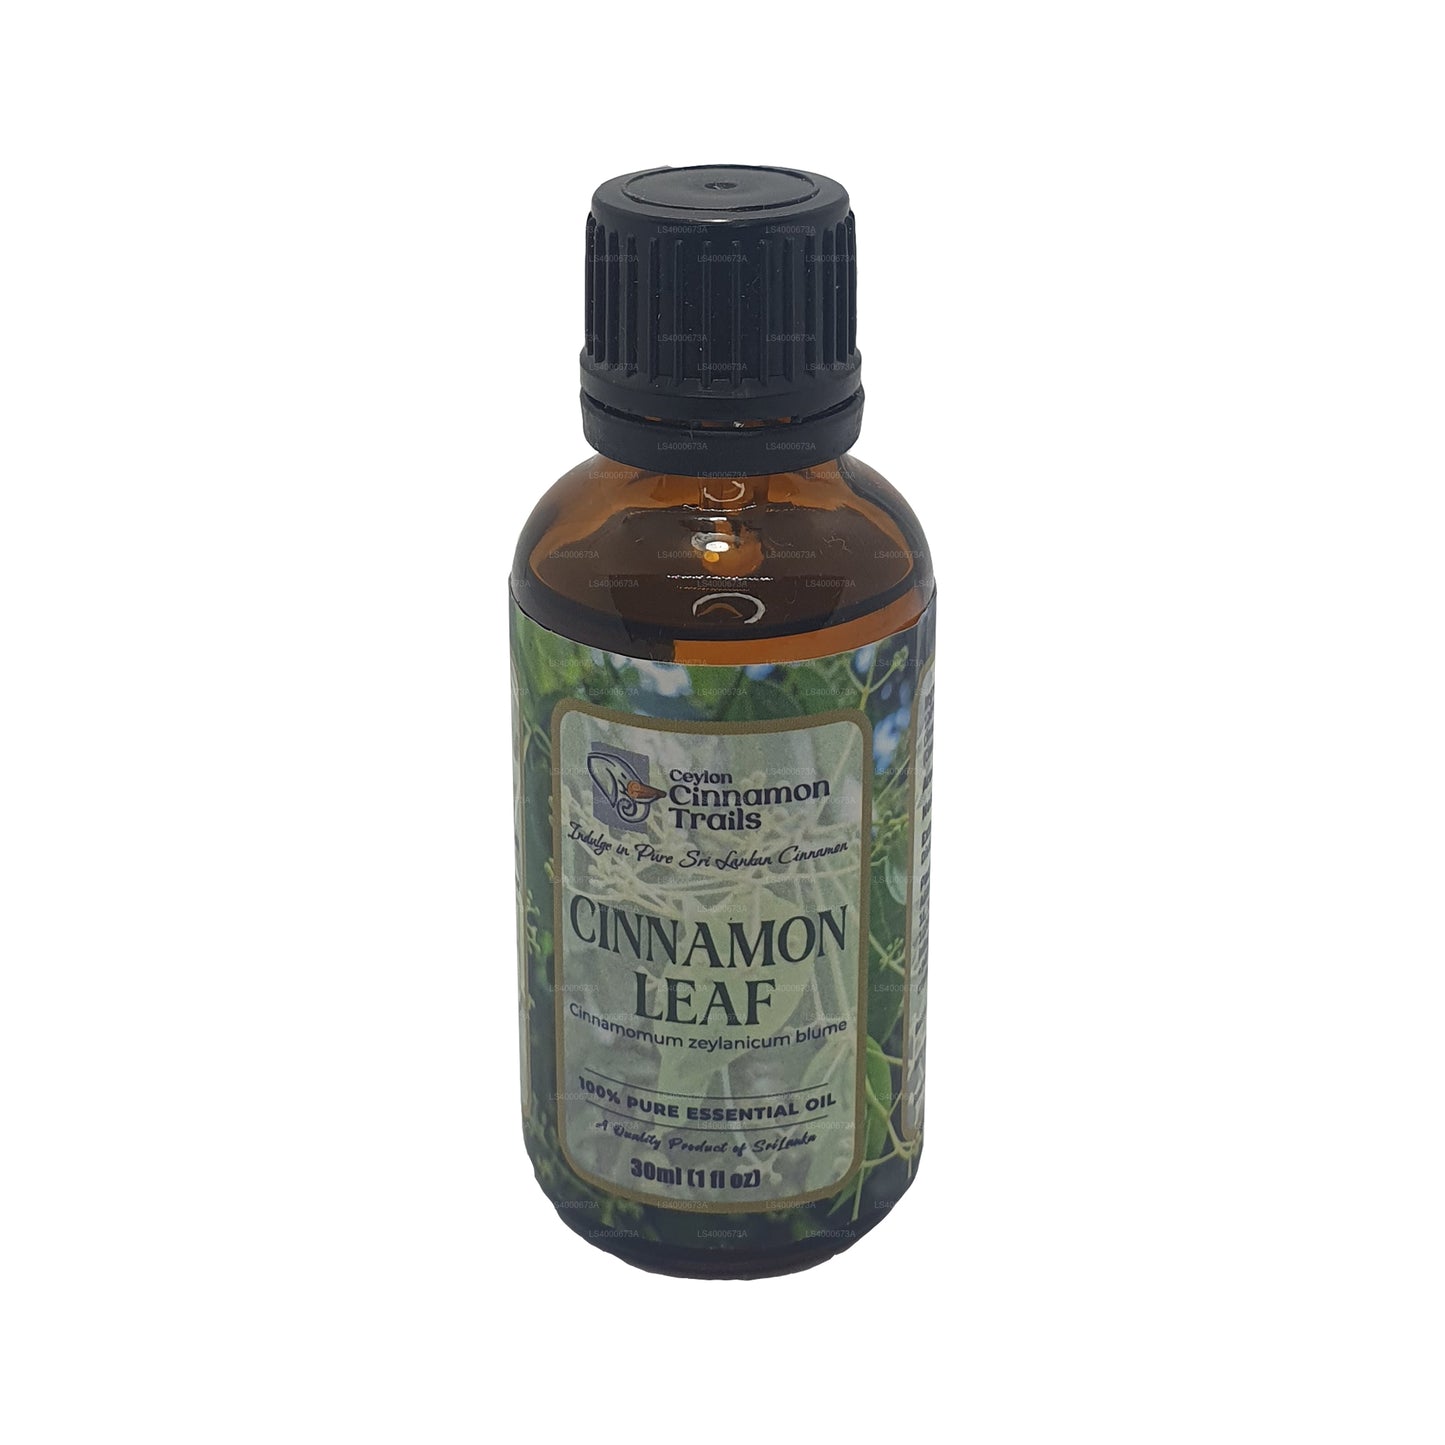 Ceylon Cinnamon Trails Cinnamon Leaf Essentials-olie (10 ml)